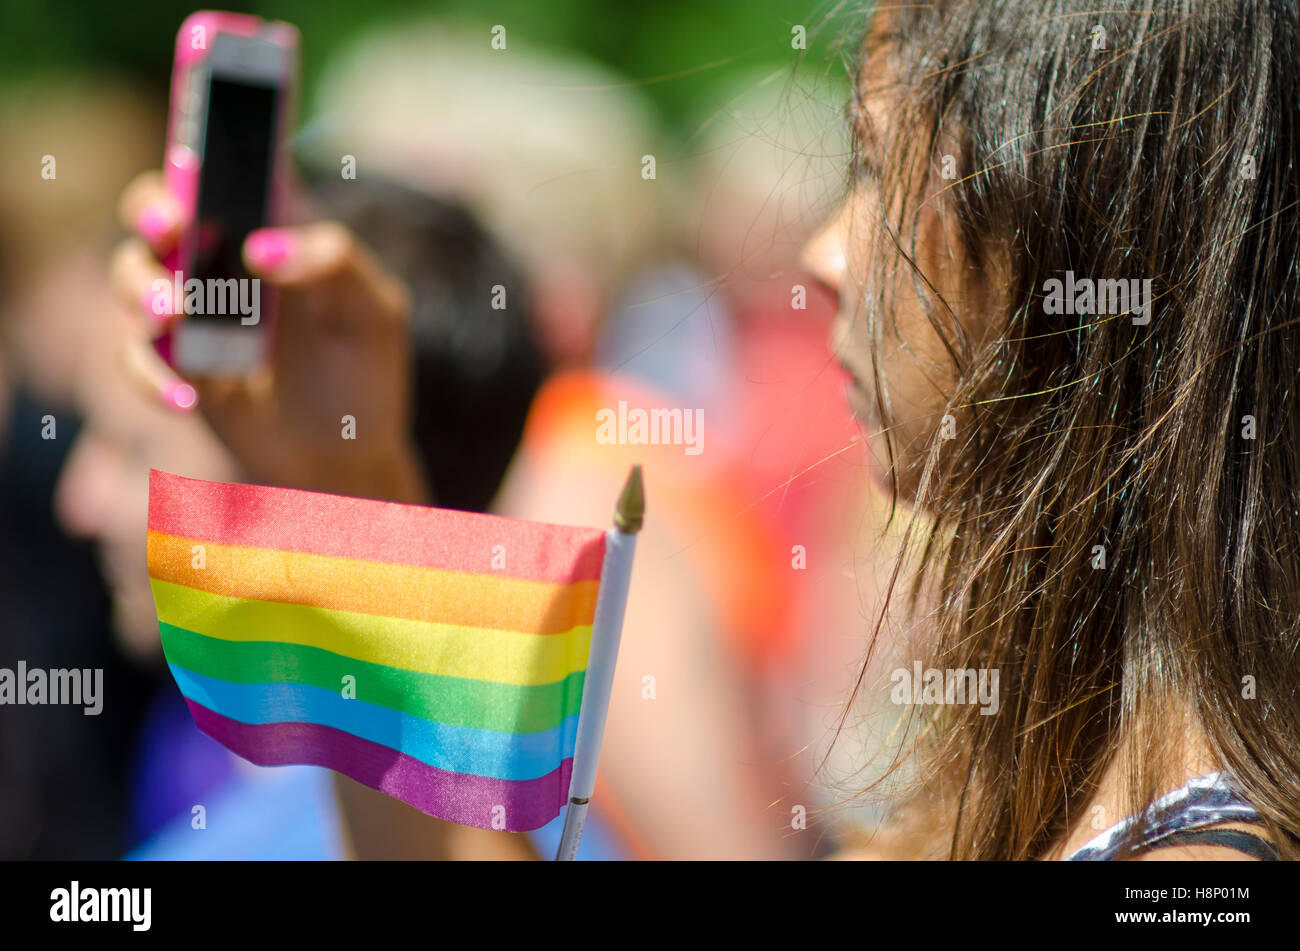 NEW YORK - 21 juin 2016 : Une jeune femme prend une photo tout en brandissant un drapeau arc-en-ciel à l'appui de la Gay Pride Parade annuelle Banque D'Images